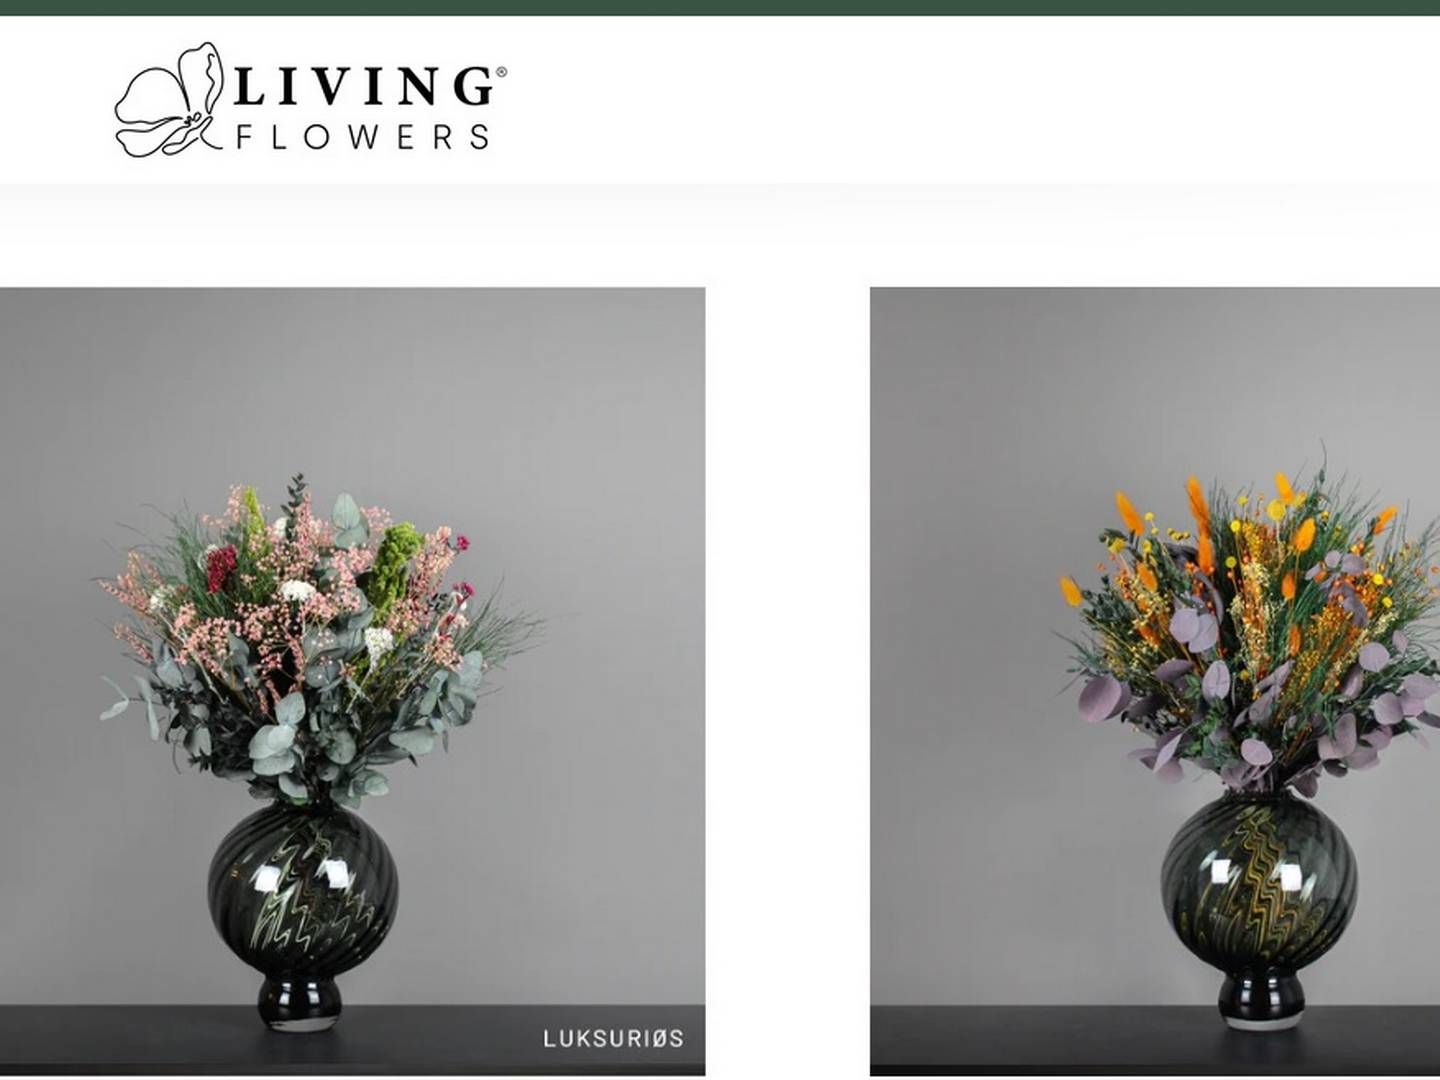 Living Flowers holder til i Hinnerup ved Aarhus, men har onlinesalg til hele Skandinavien.